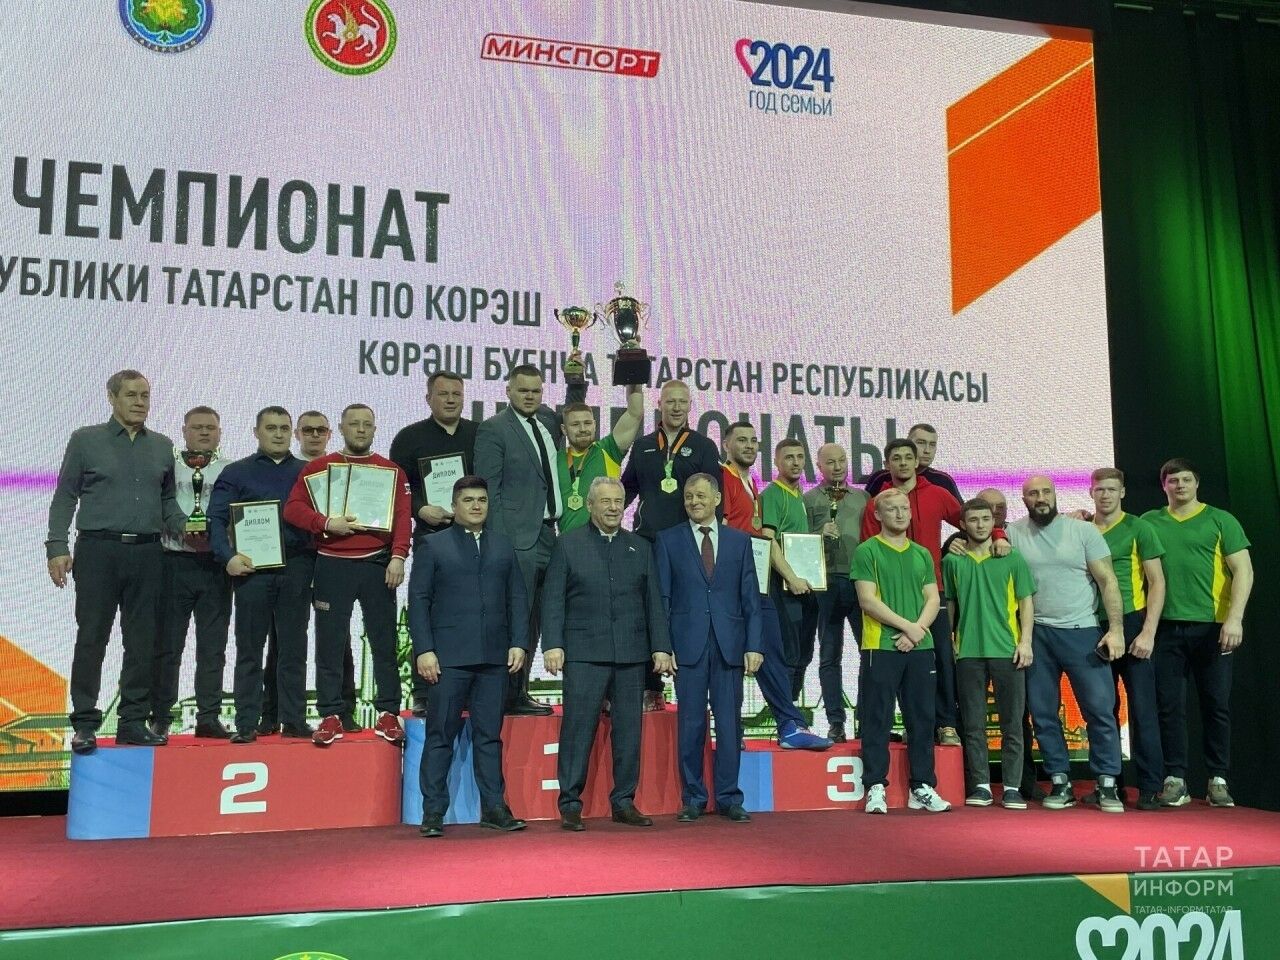 Альметьевцы среди призеров первенства Татарстана по борьбе корэш